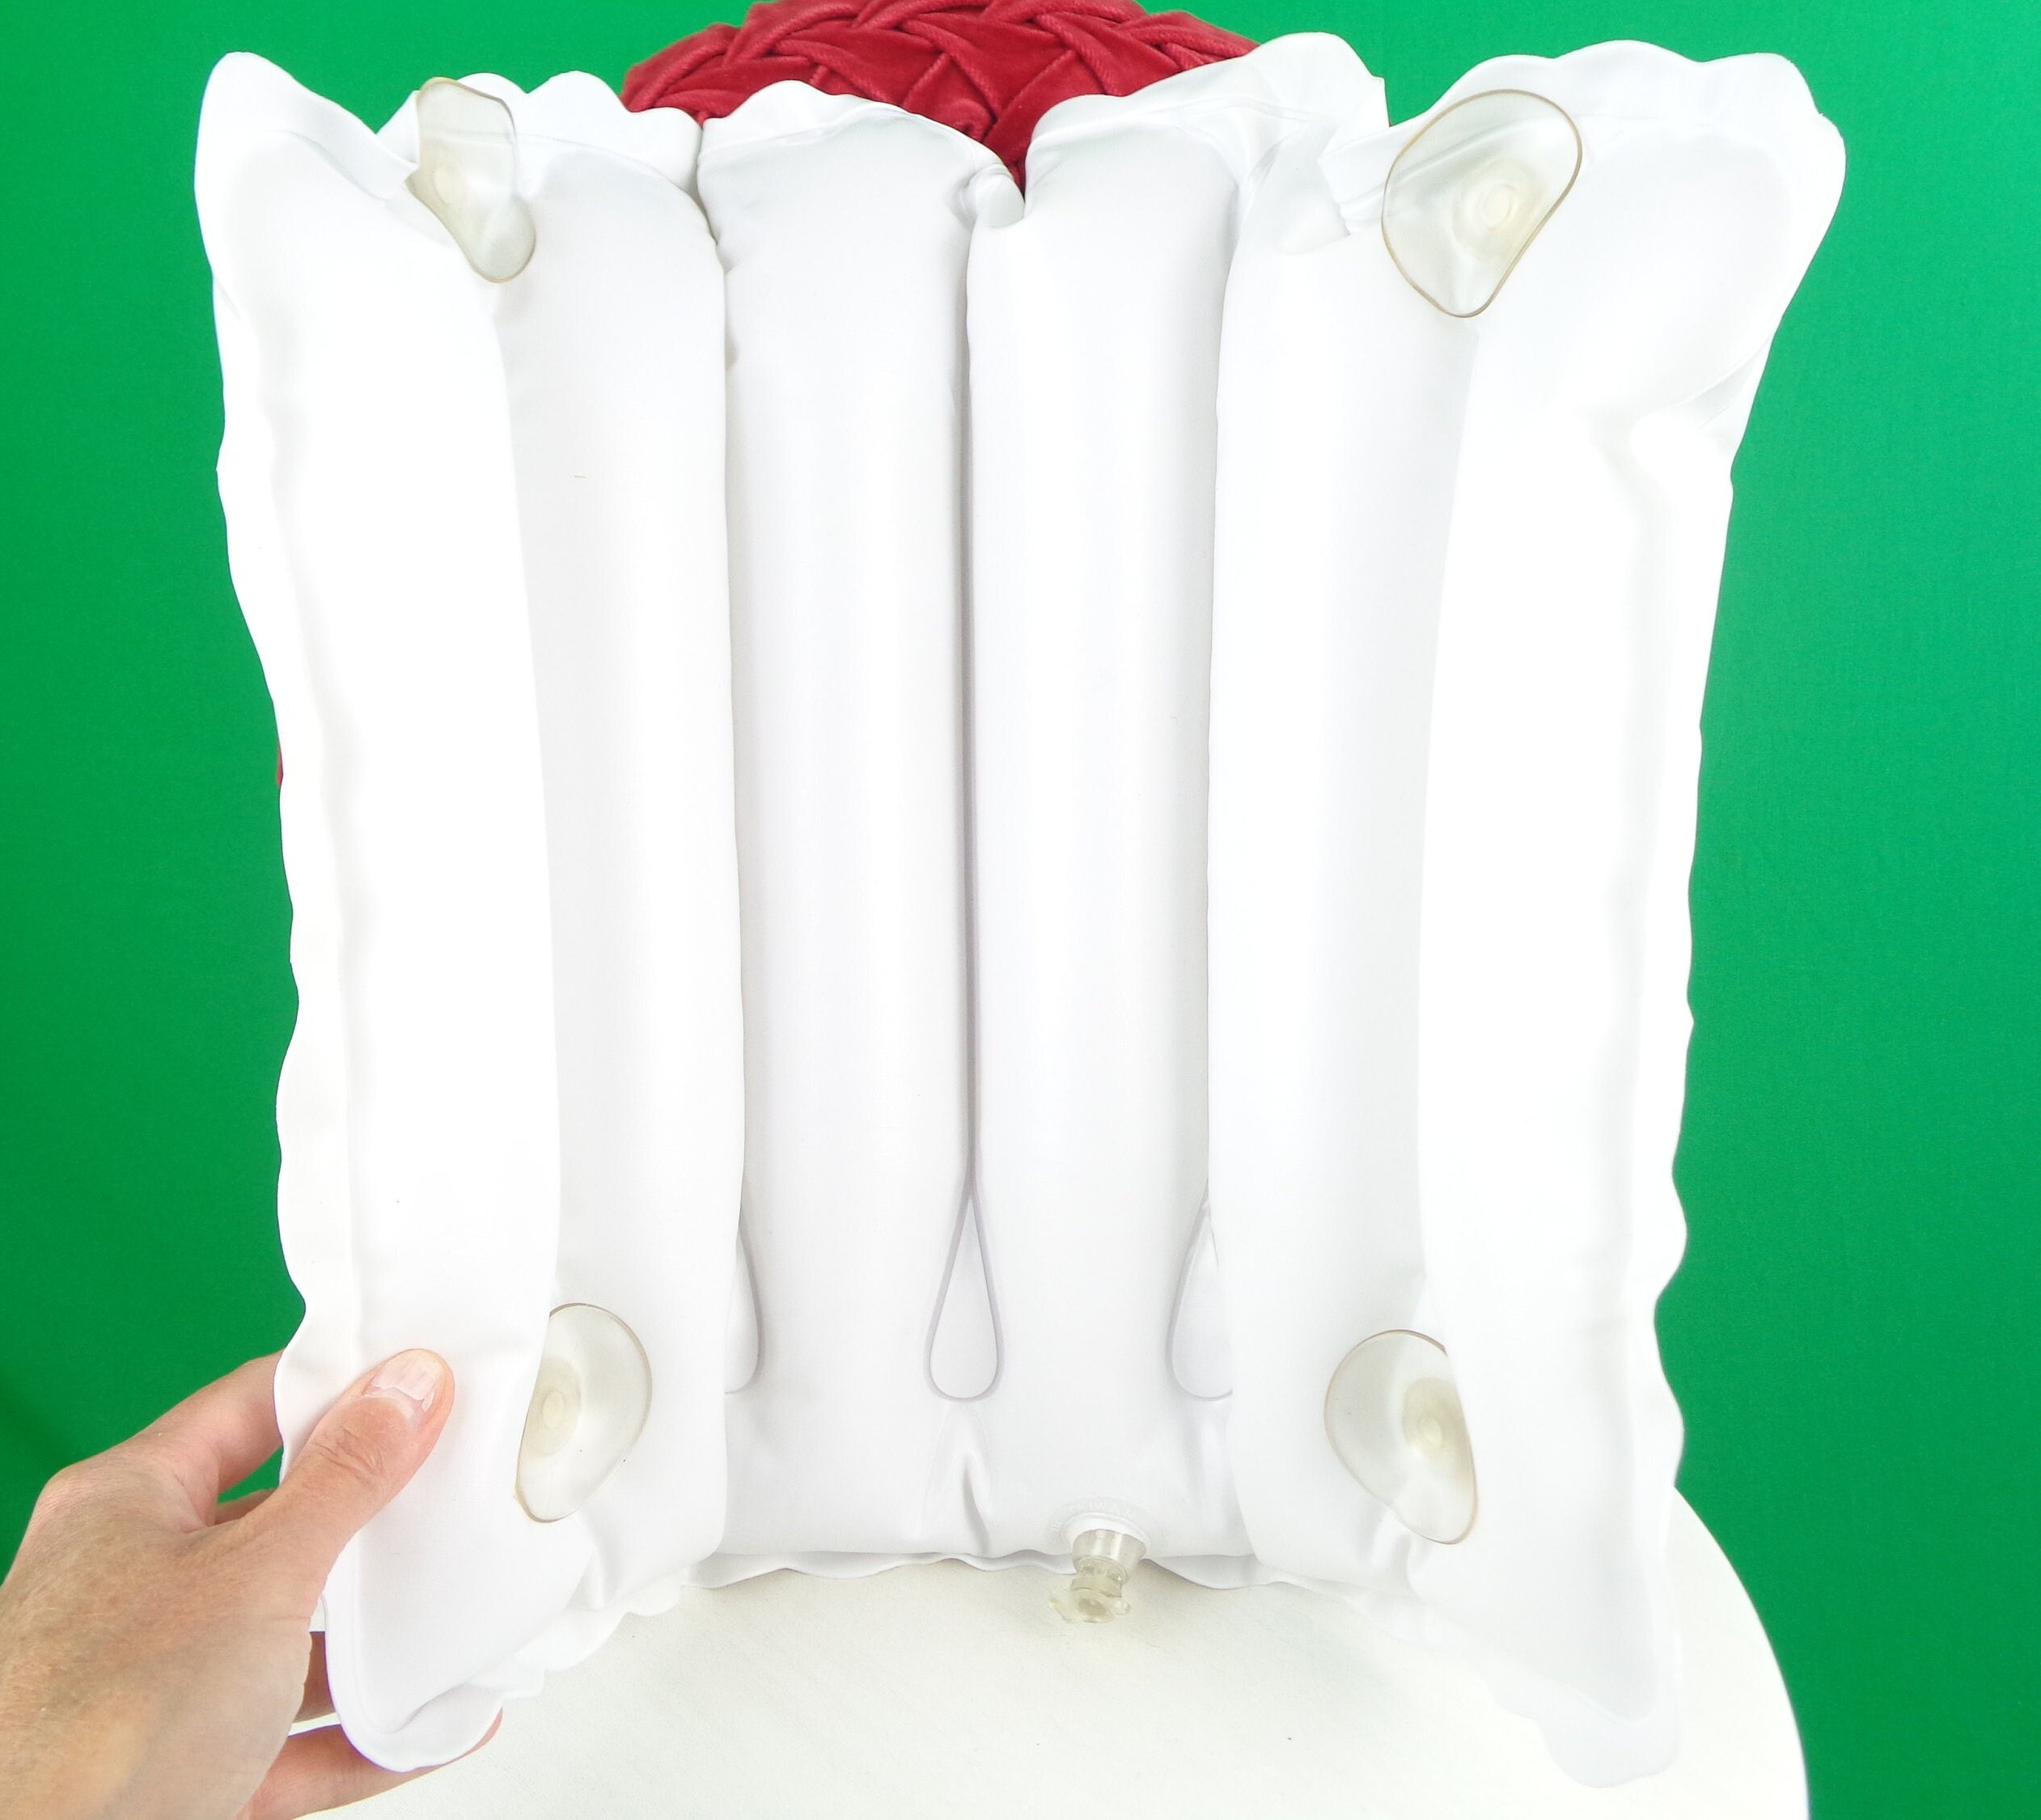 Simple White Bath Pillow, Full Body Bath Pillow, Anti-slip Pvc